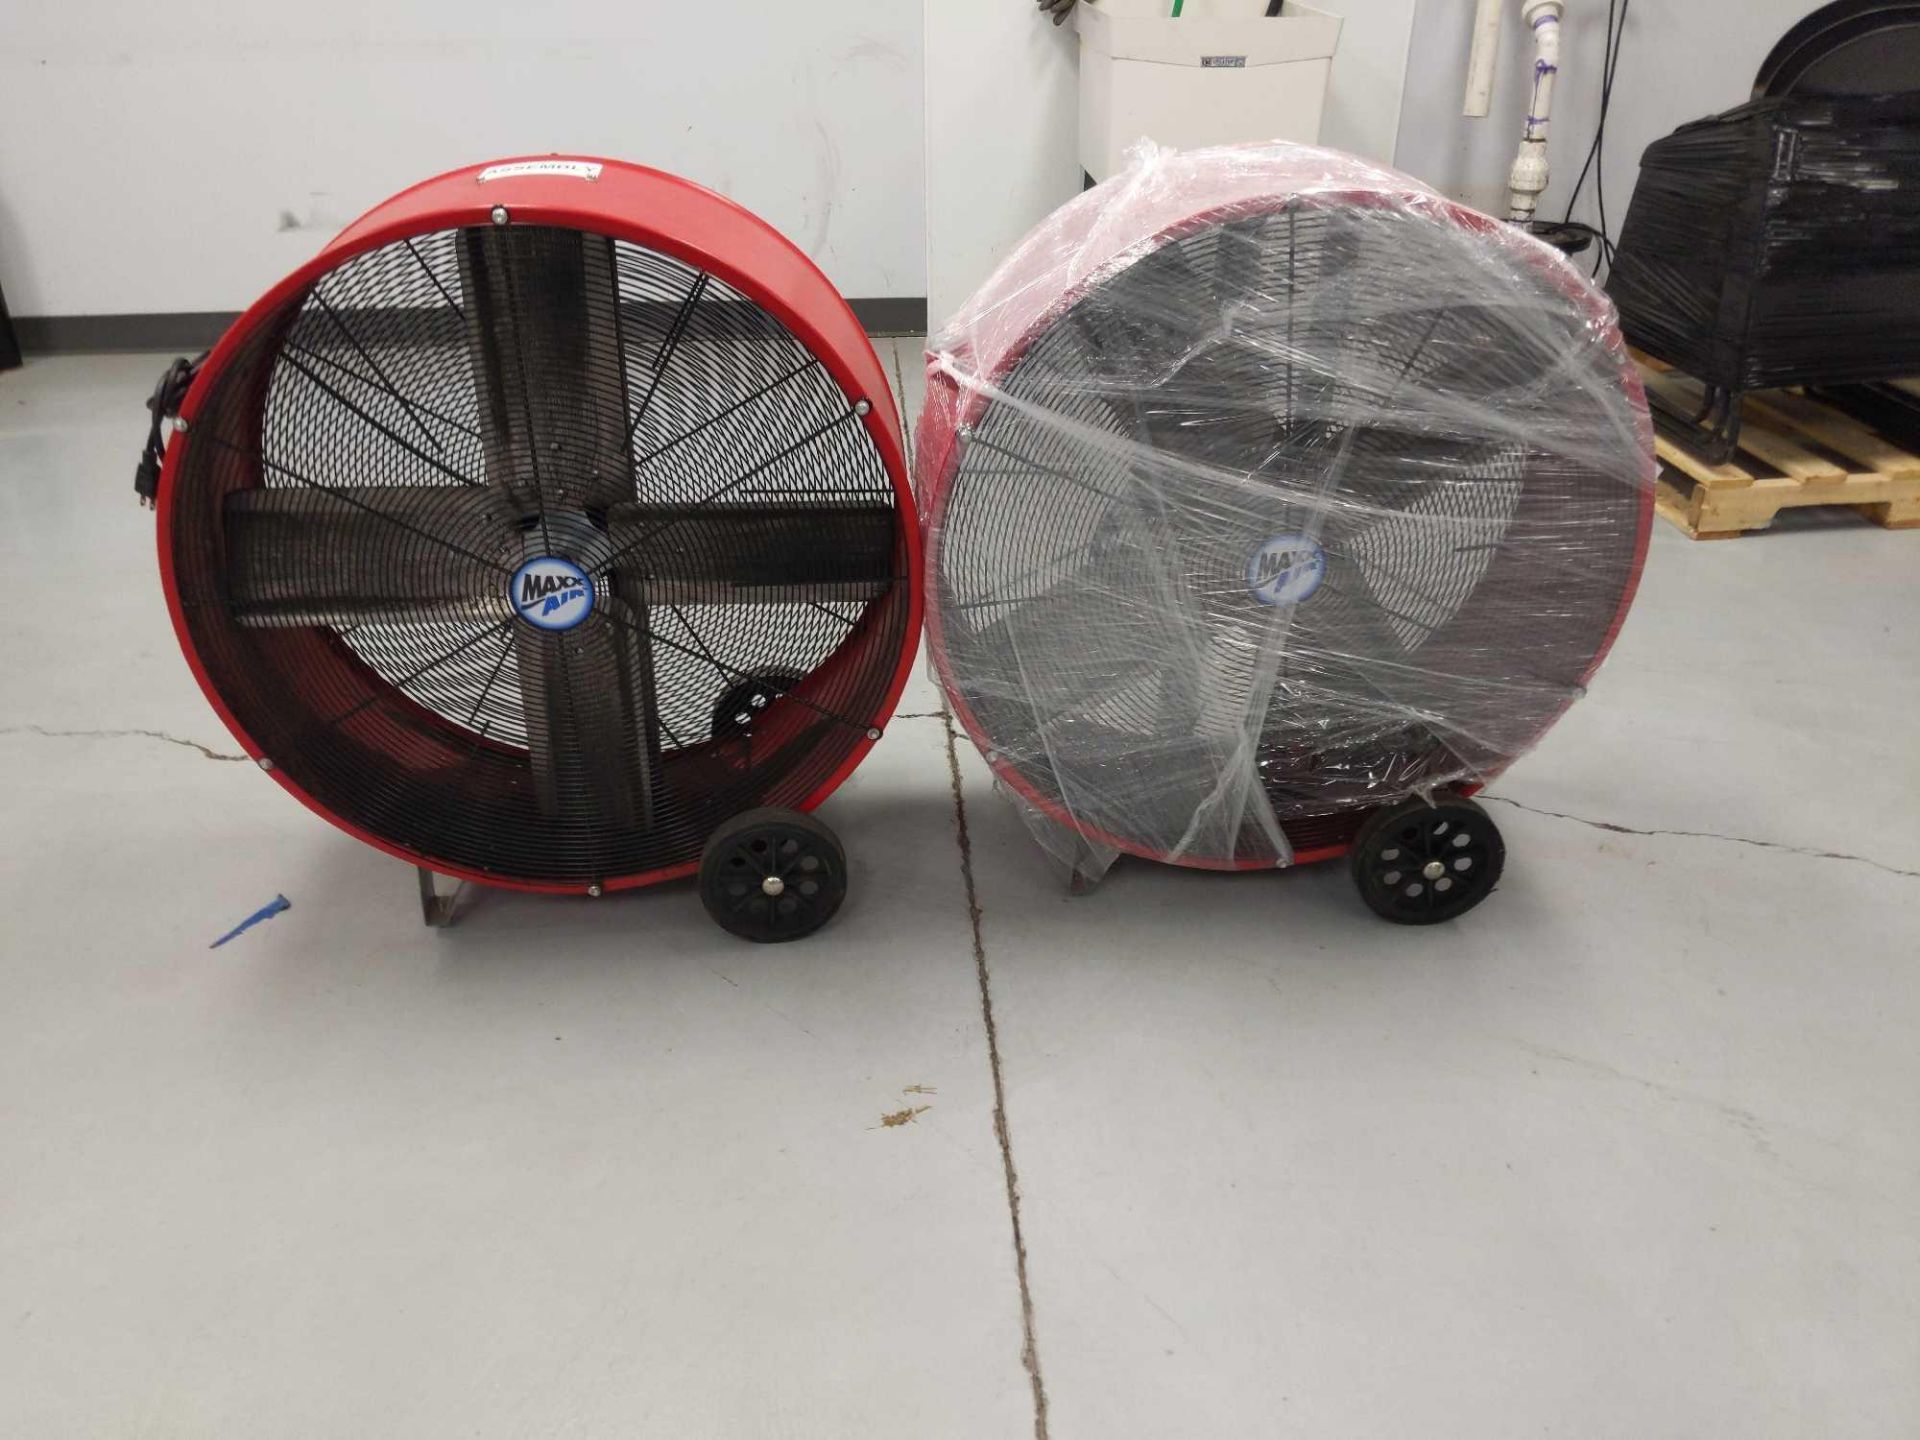 2 Maxx Air Fans with Wheels